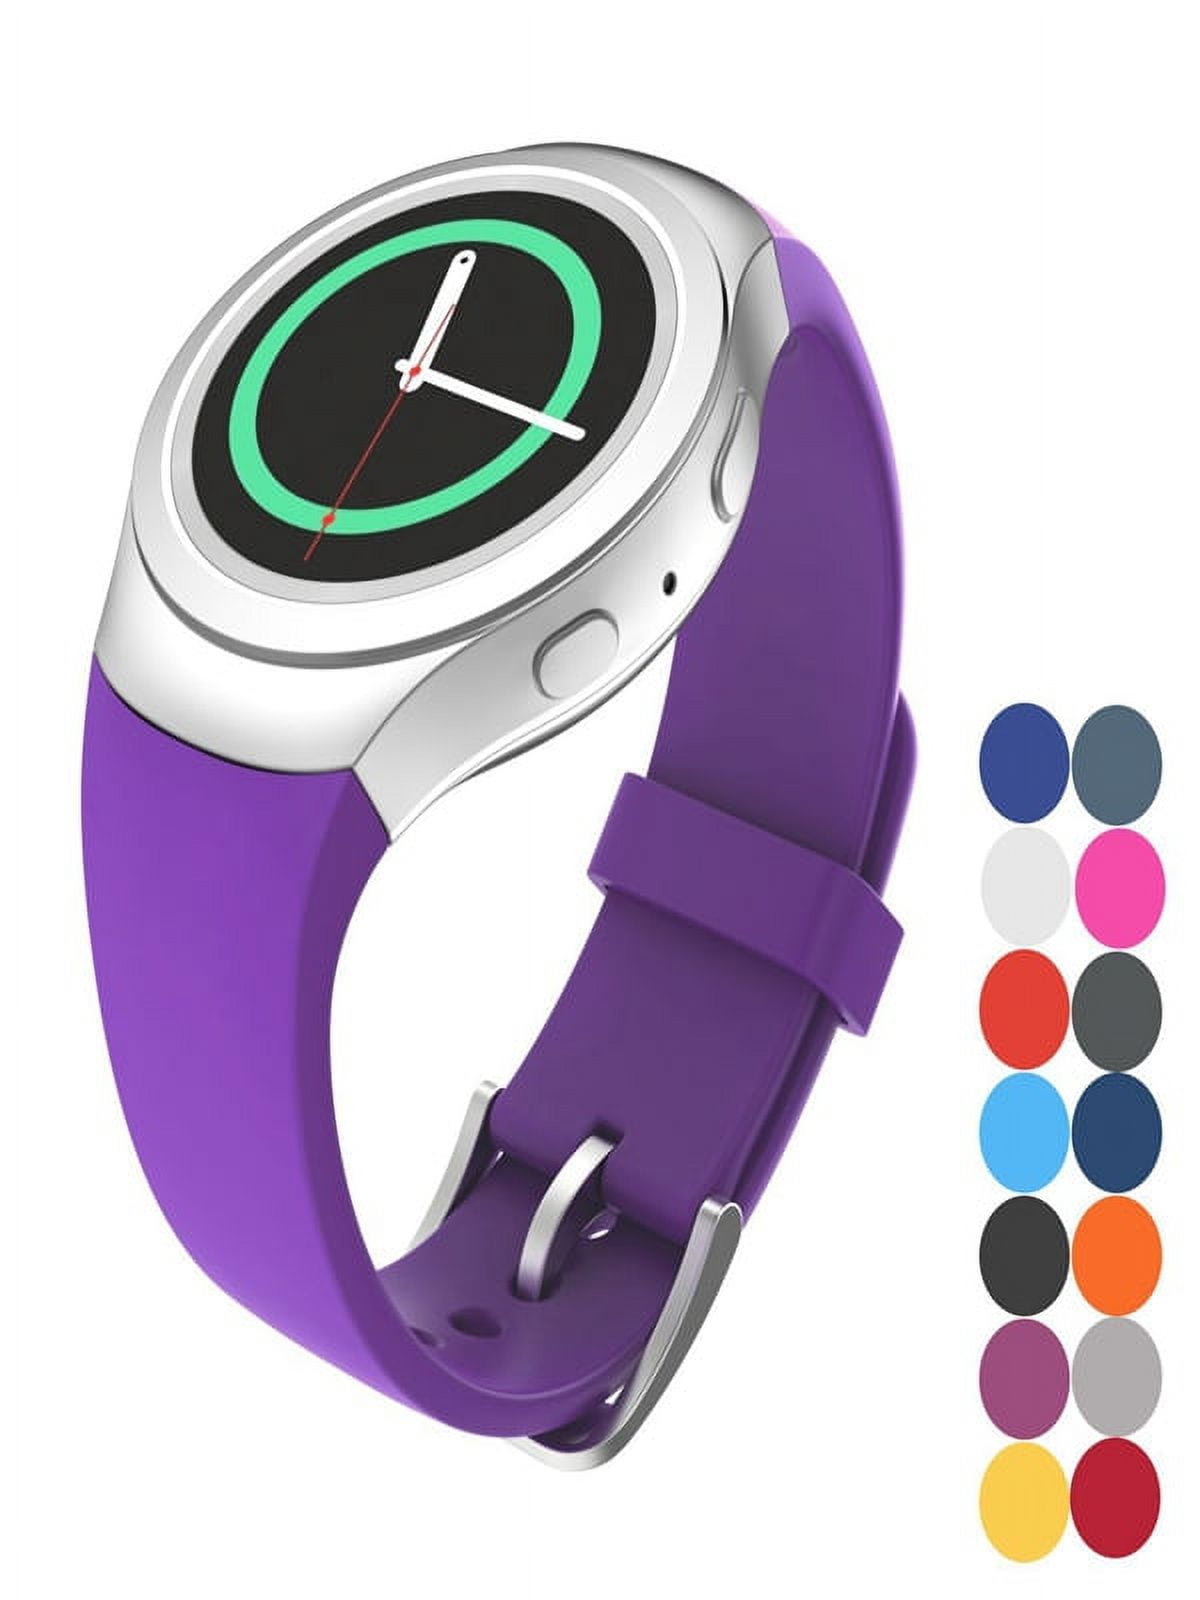 TOZO S2 44mm Smart Watch Alexa Fitness Tracker Touch Screen Waterproof 5ATM  | eBay